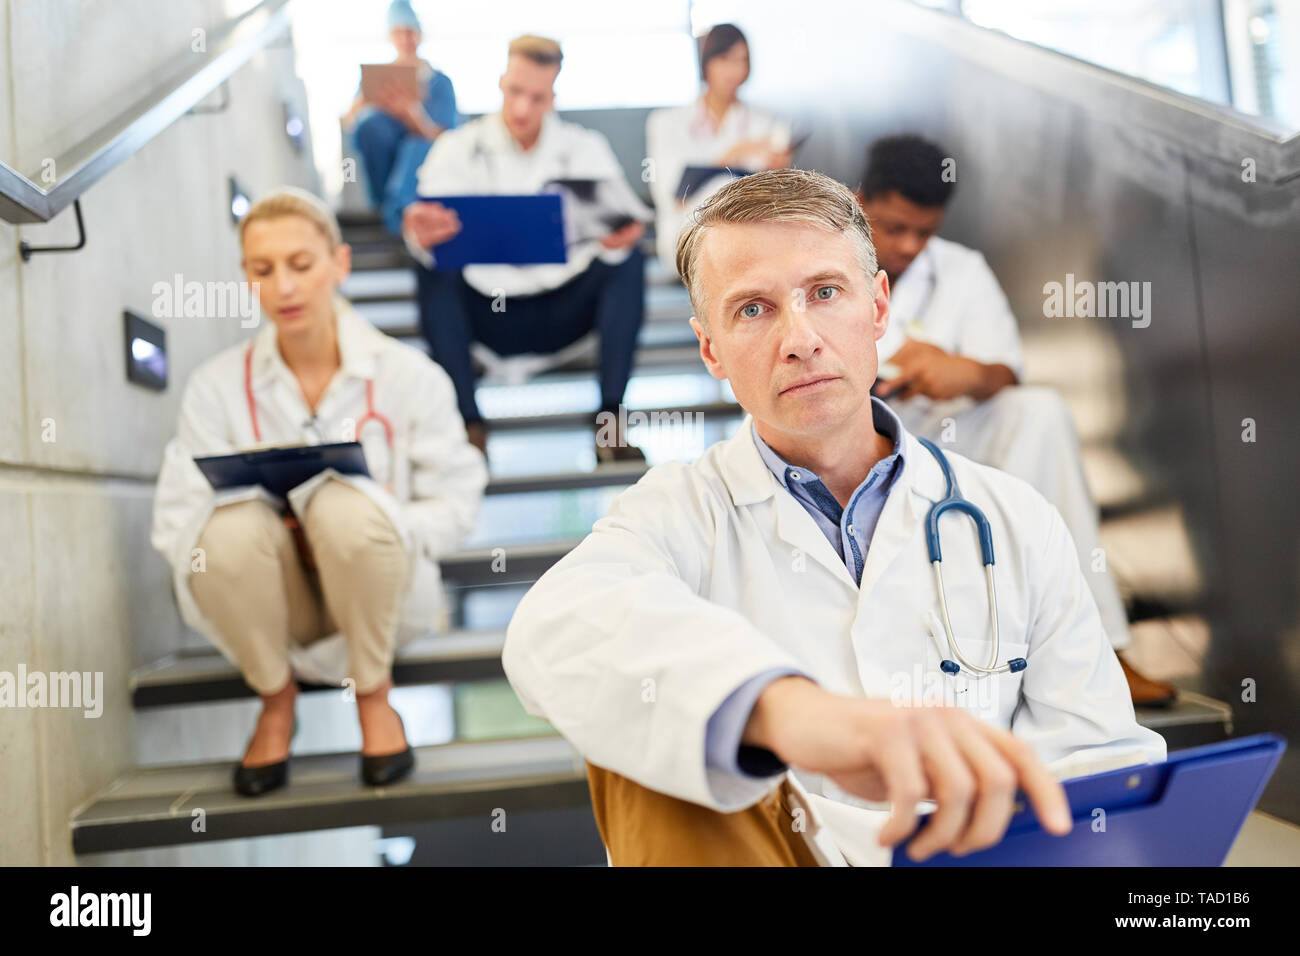 Oberarzt mit Verantwortung und Kompetenz mit seinem medizinischen Team während einer Pause Stockfoto